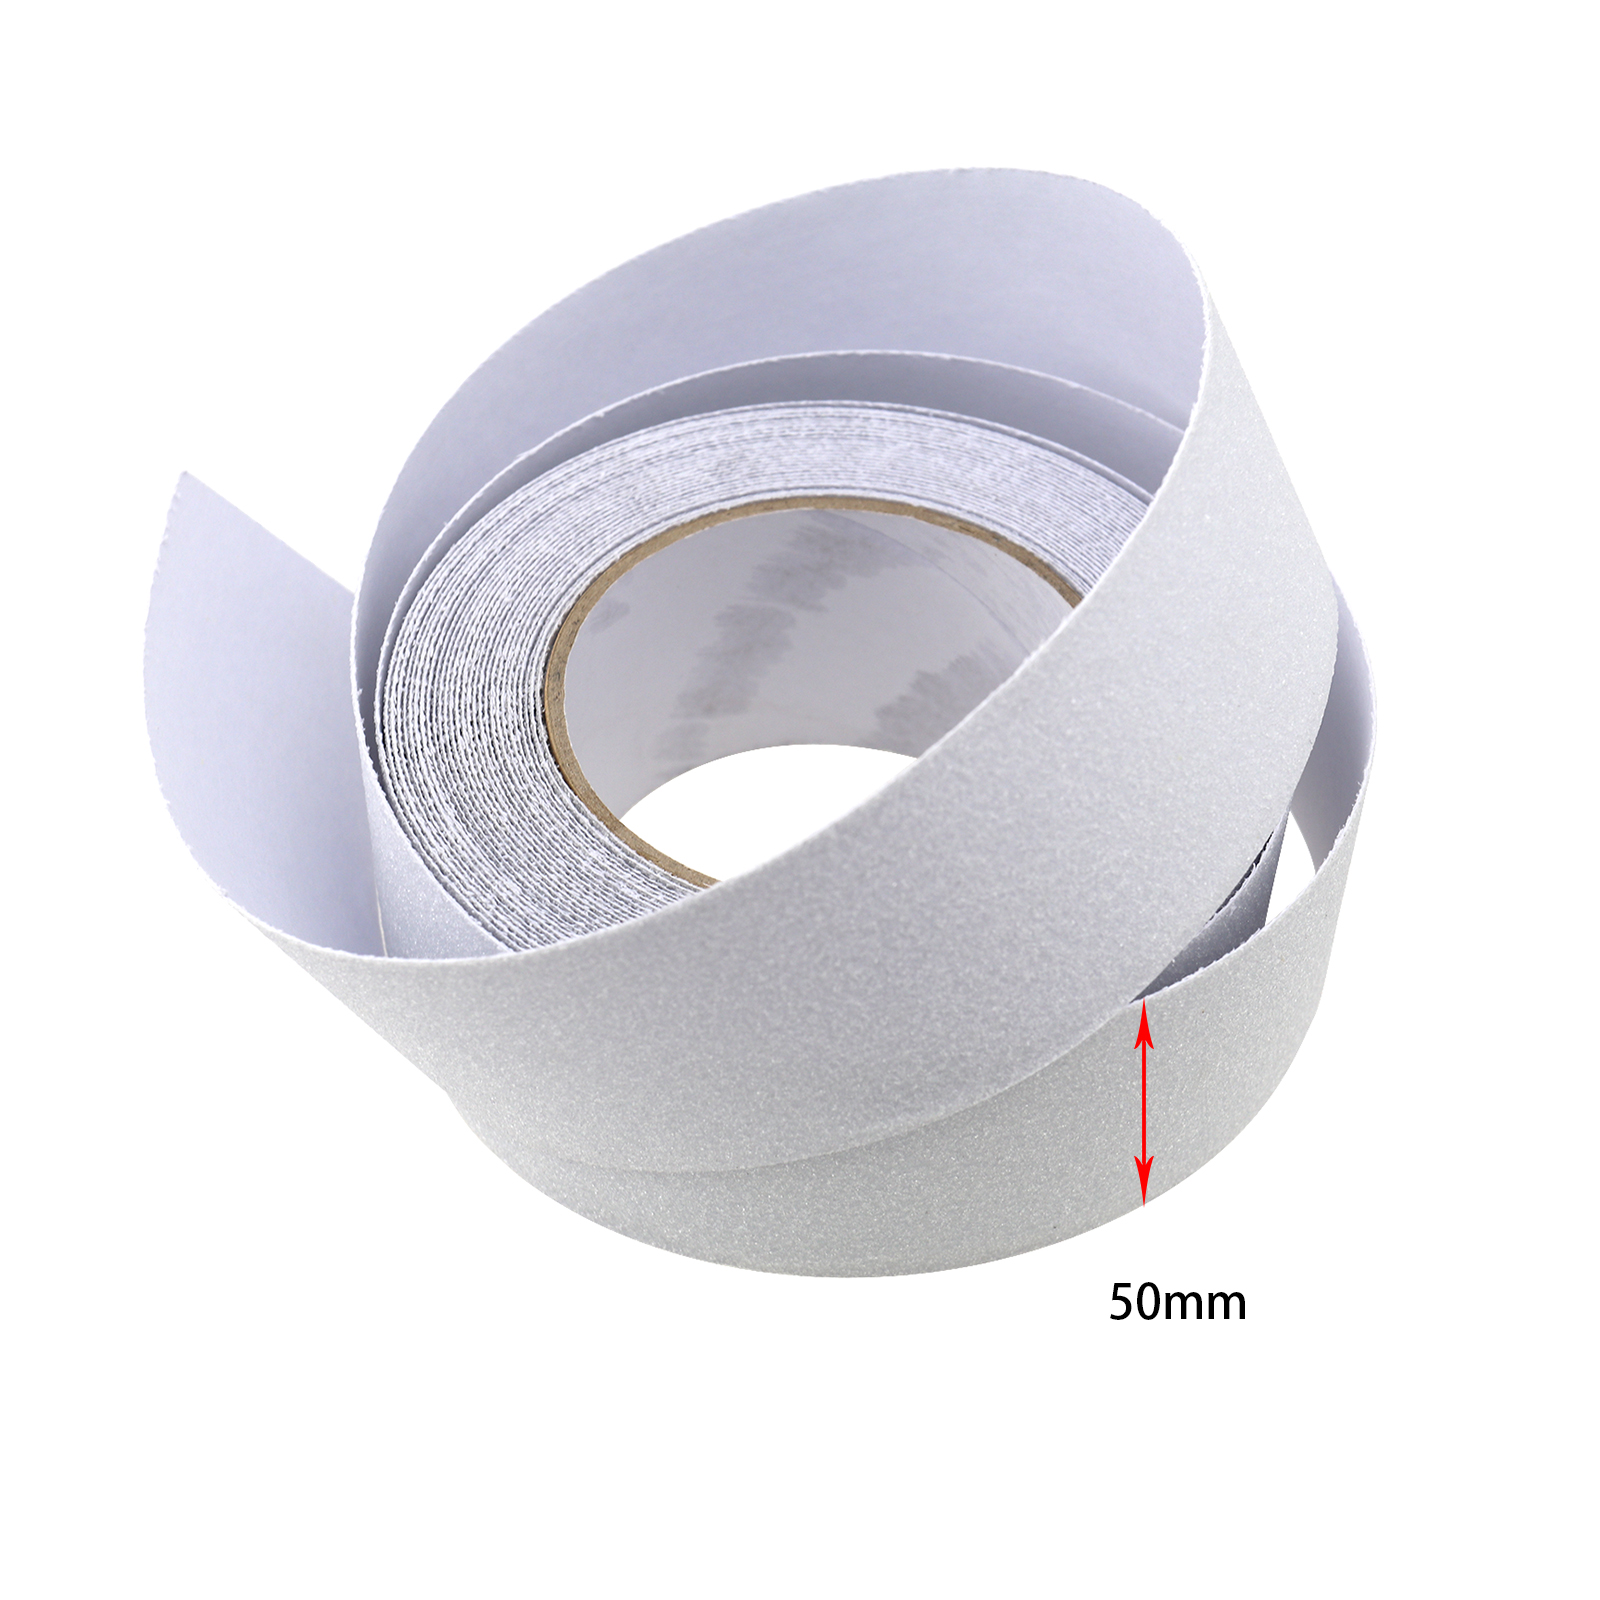 Sandpaper-like Anti Slip Tape Non Slip Strips Grip Sticker Floor Safety ...